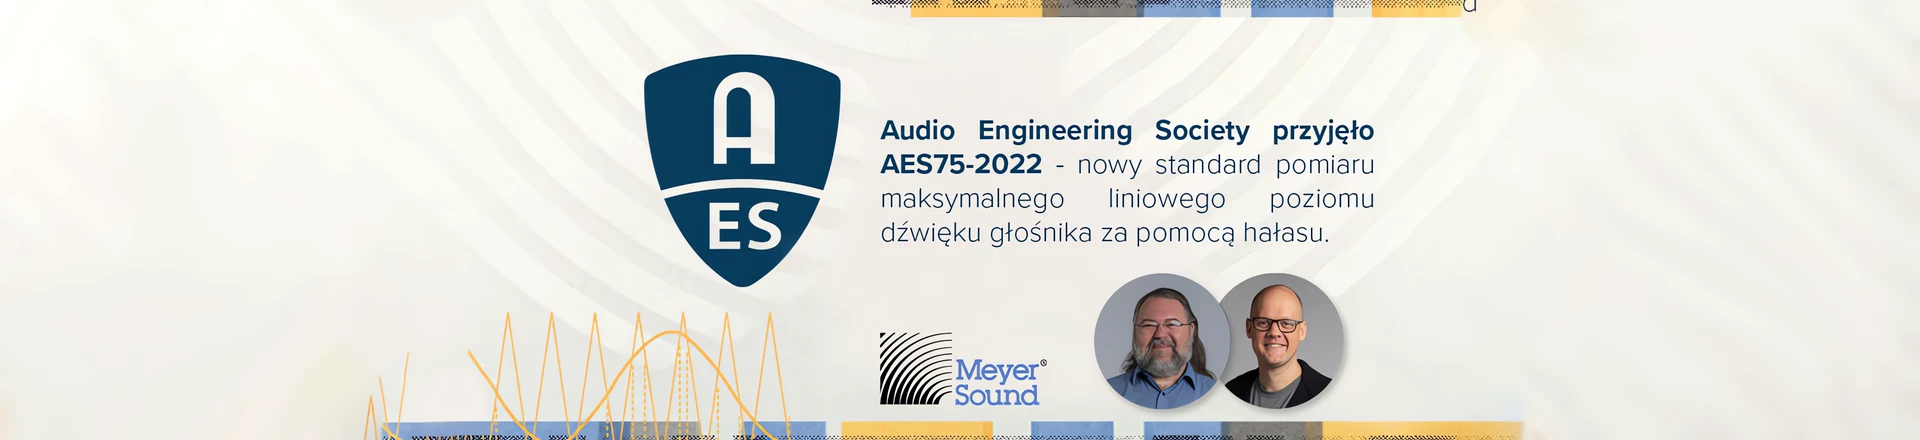 AES75-2022 - Nowy standard dla akustyki z potrzeby określania wydajności głośników